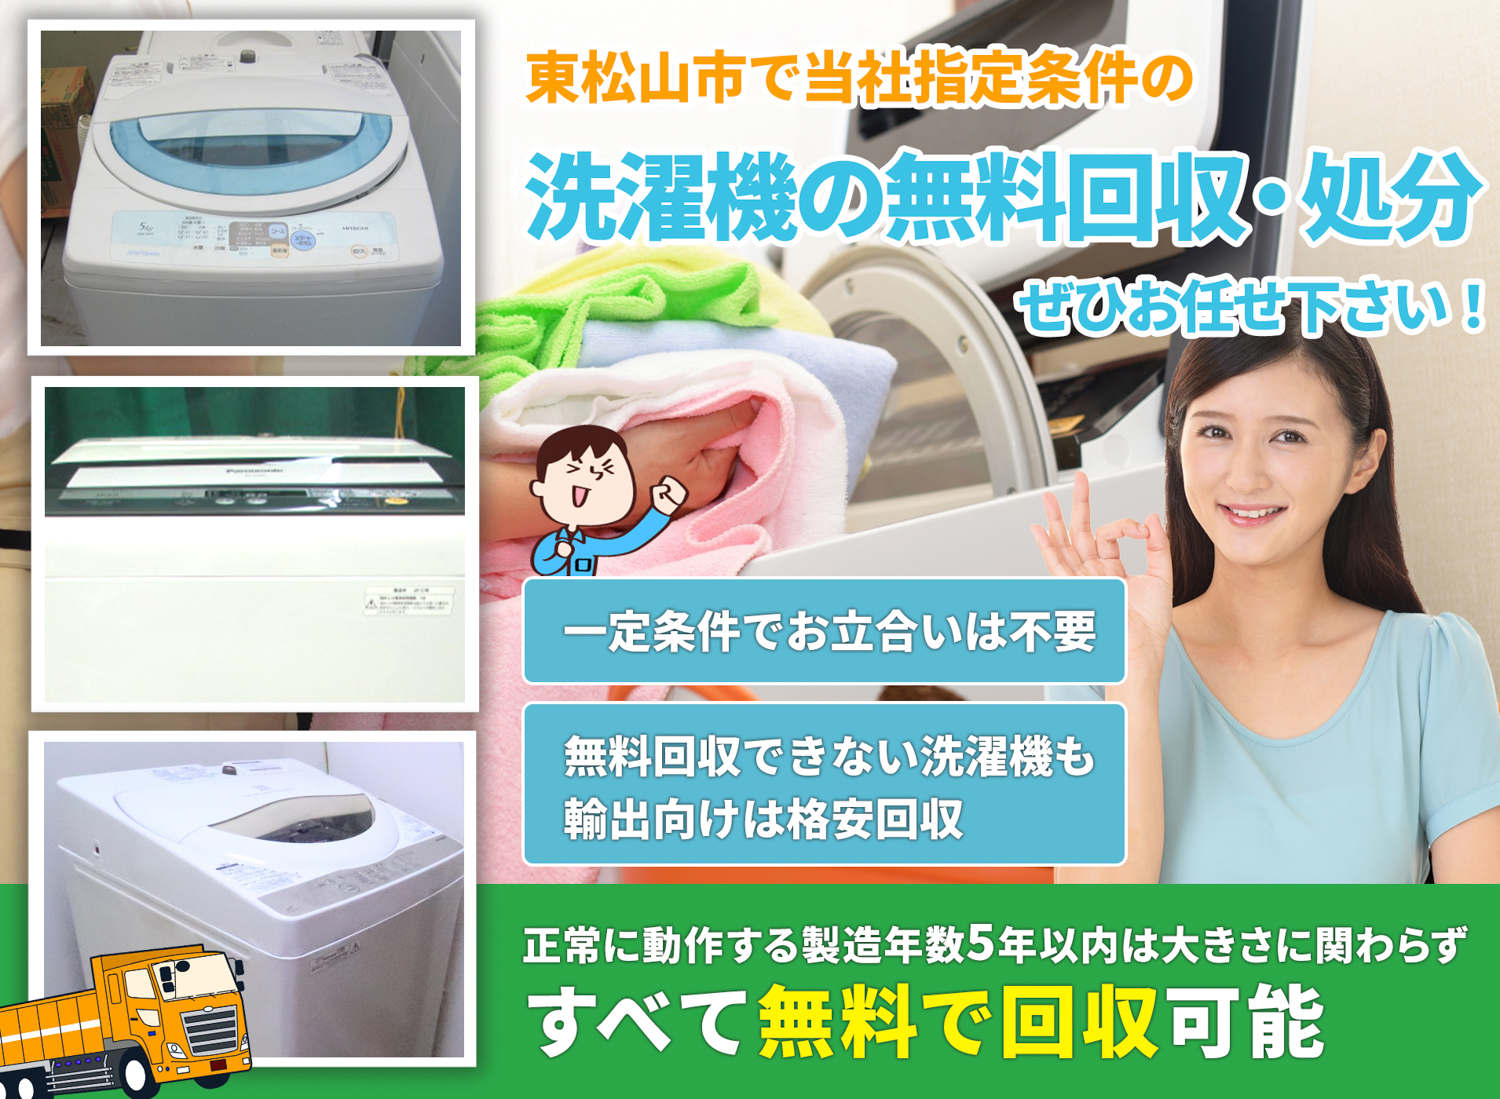 東松山市のサービスで地域一番を目指す洗濯機無料回収処分隊の洗濯機無料回収サービス